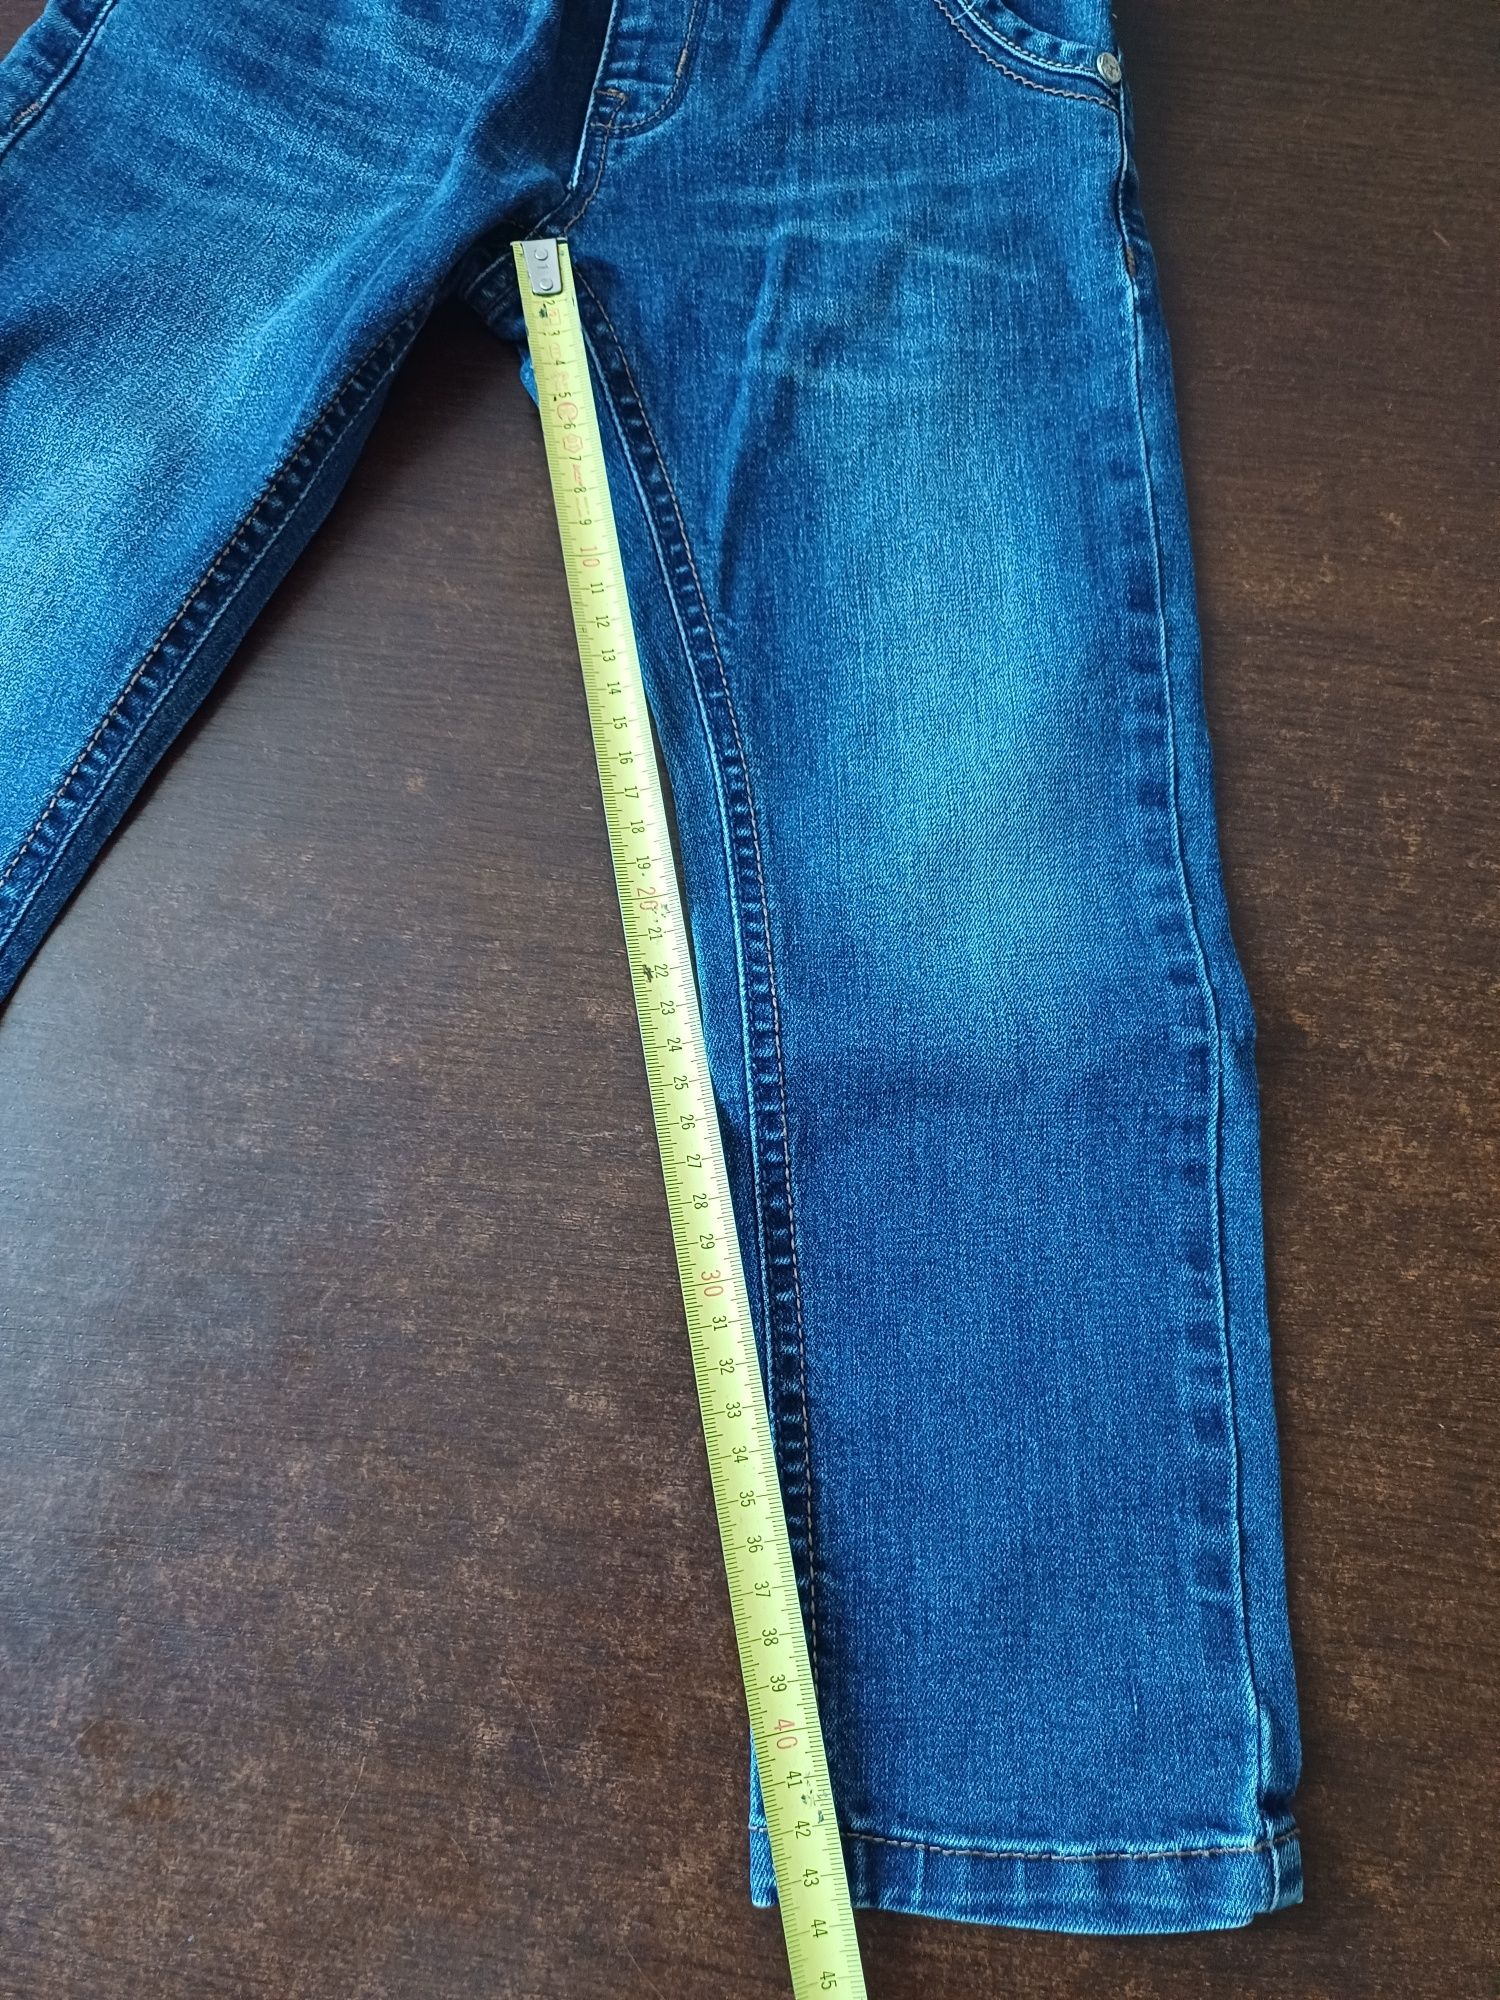 Spodnie jeansowe dla chłopca 98/104